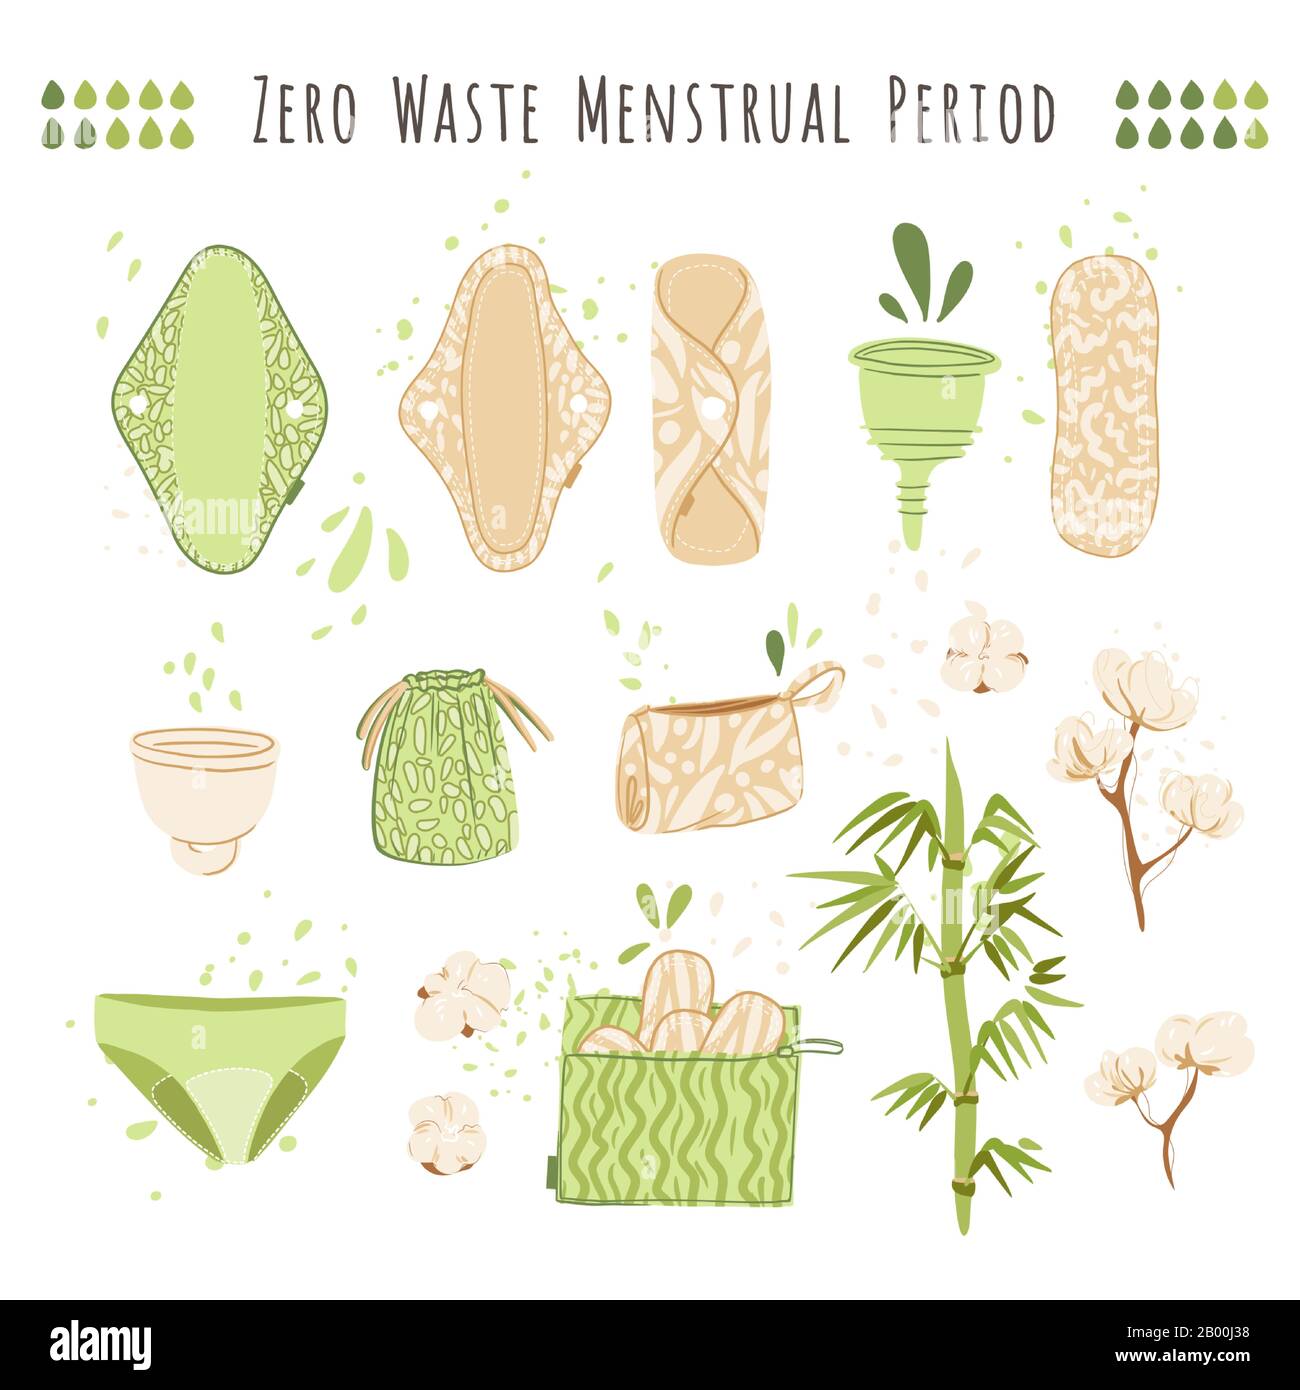 Zero Waste Woman Menstruation Vector Cartoon Flat Set mit umweltfreundlichen Produkten - wiederverwendbare Menstruationsbeläge, Tücher, Becher, Recyclingbeutel aus Baumwolle Stock Vektor